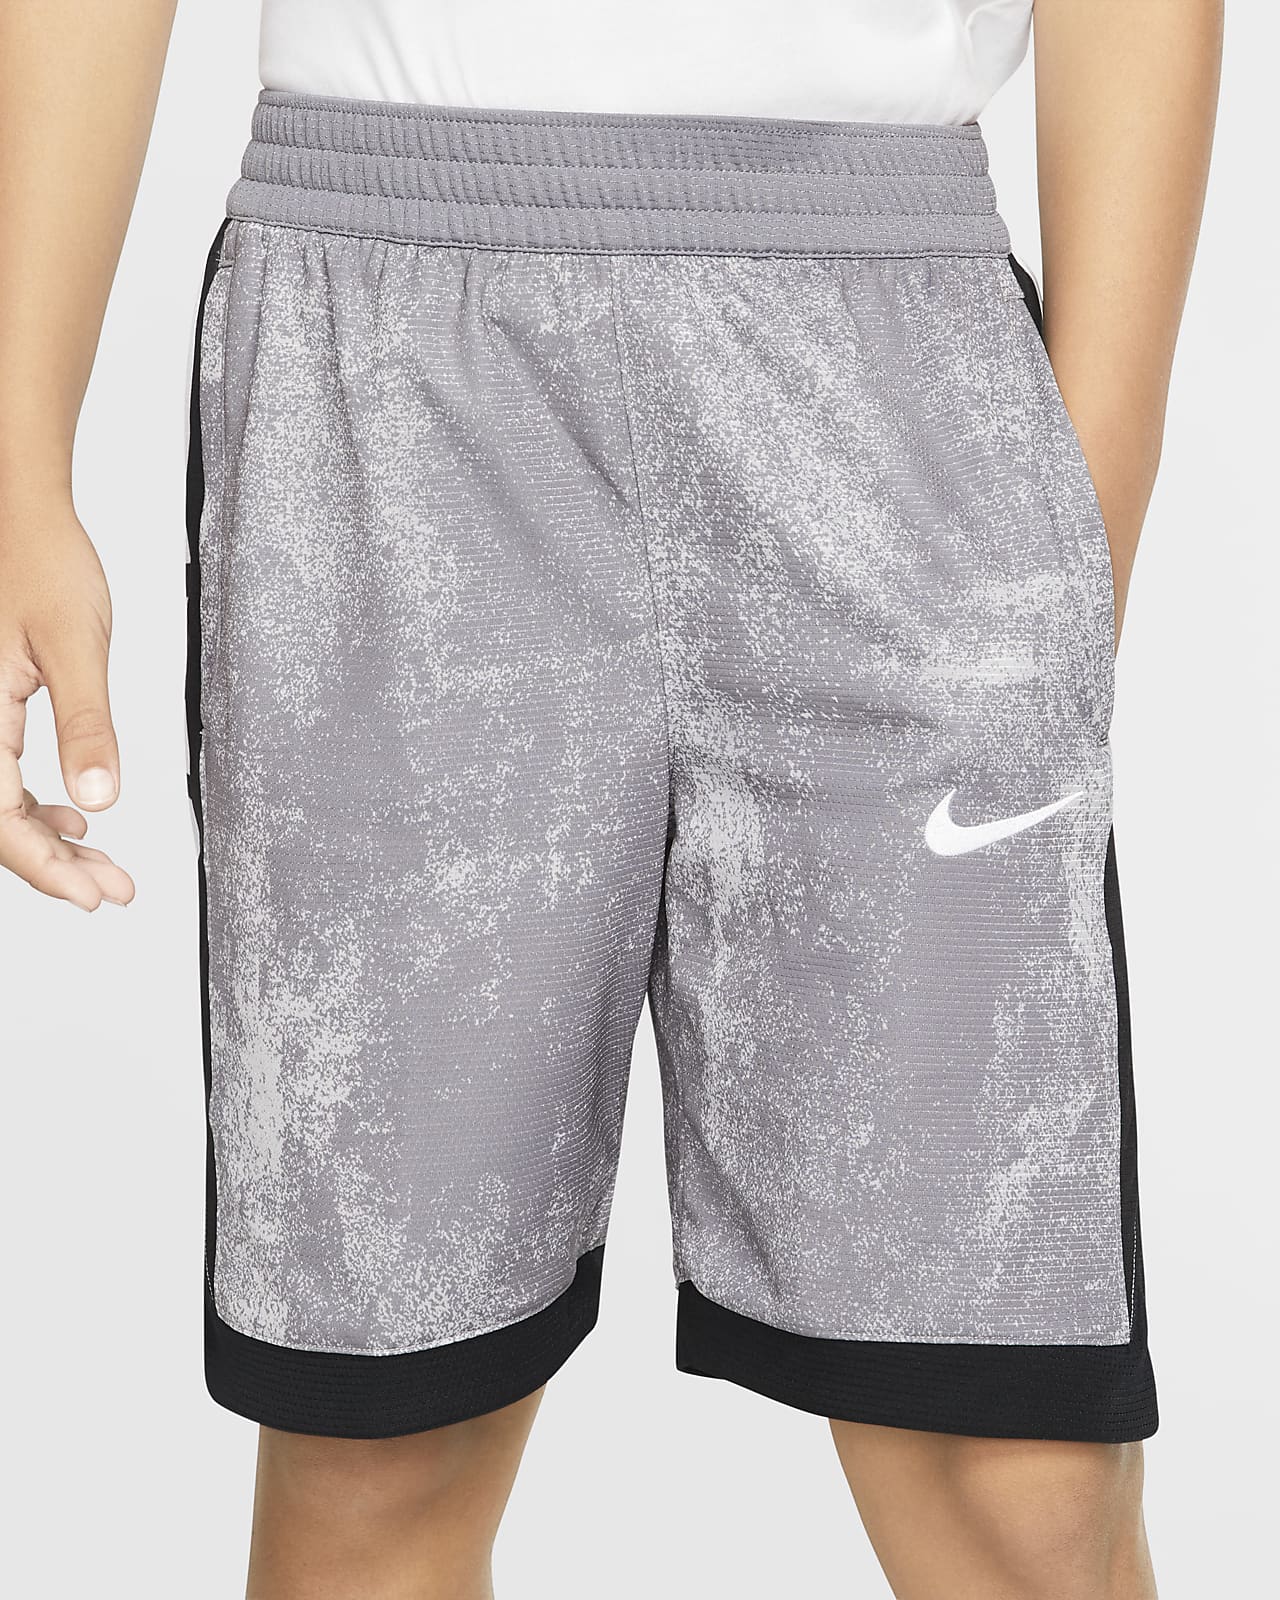 Shorts de básquetbol estampados para niño Nike Dri-FIT Elite. Nike.com